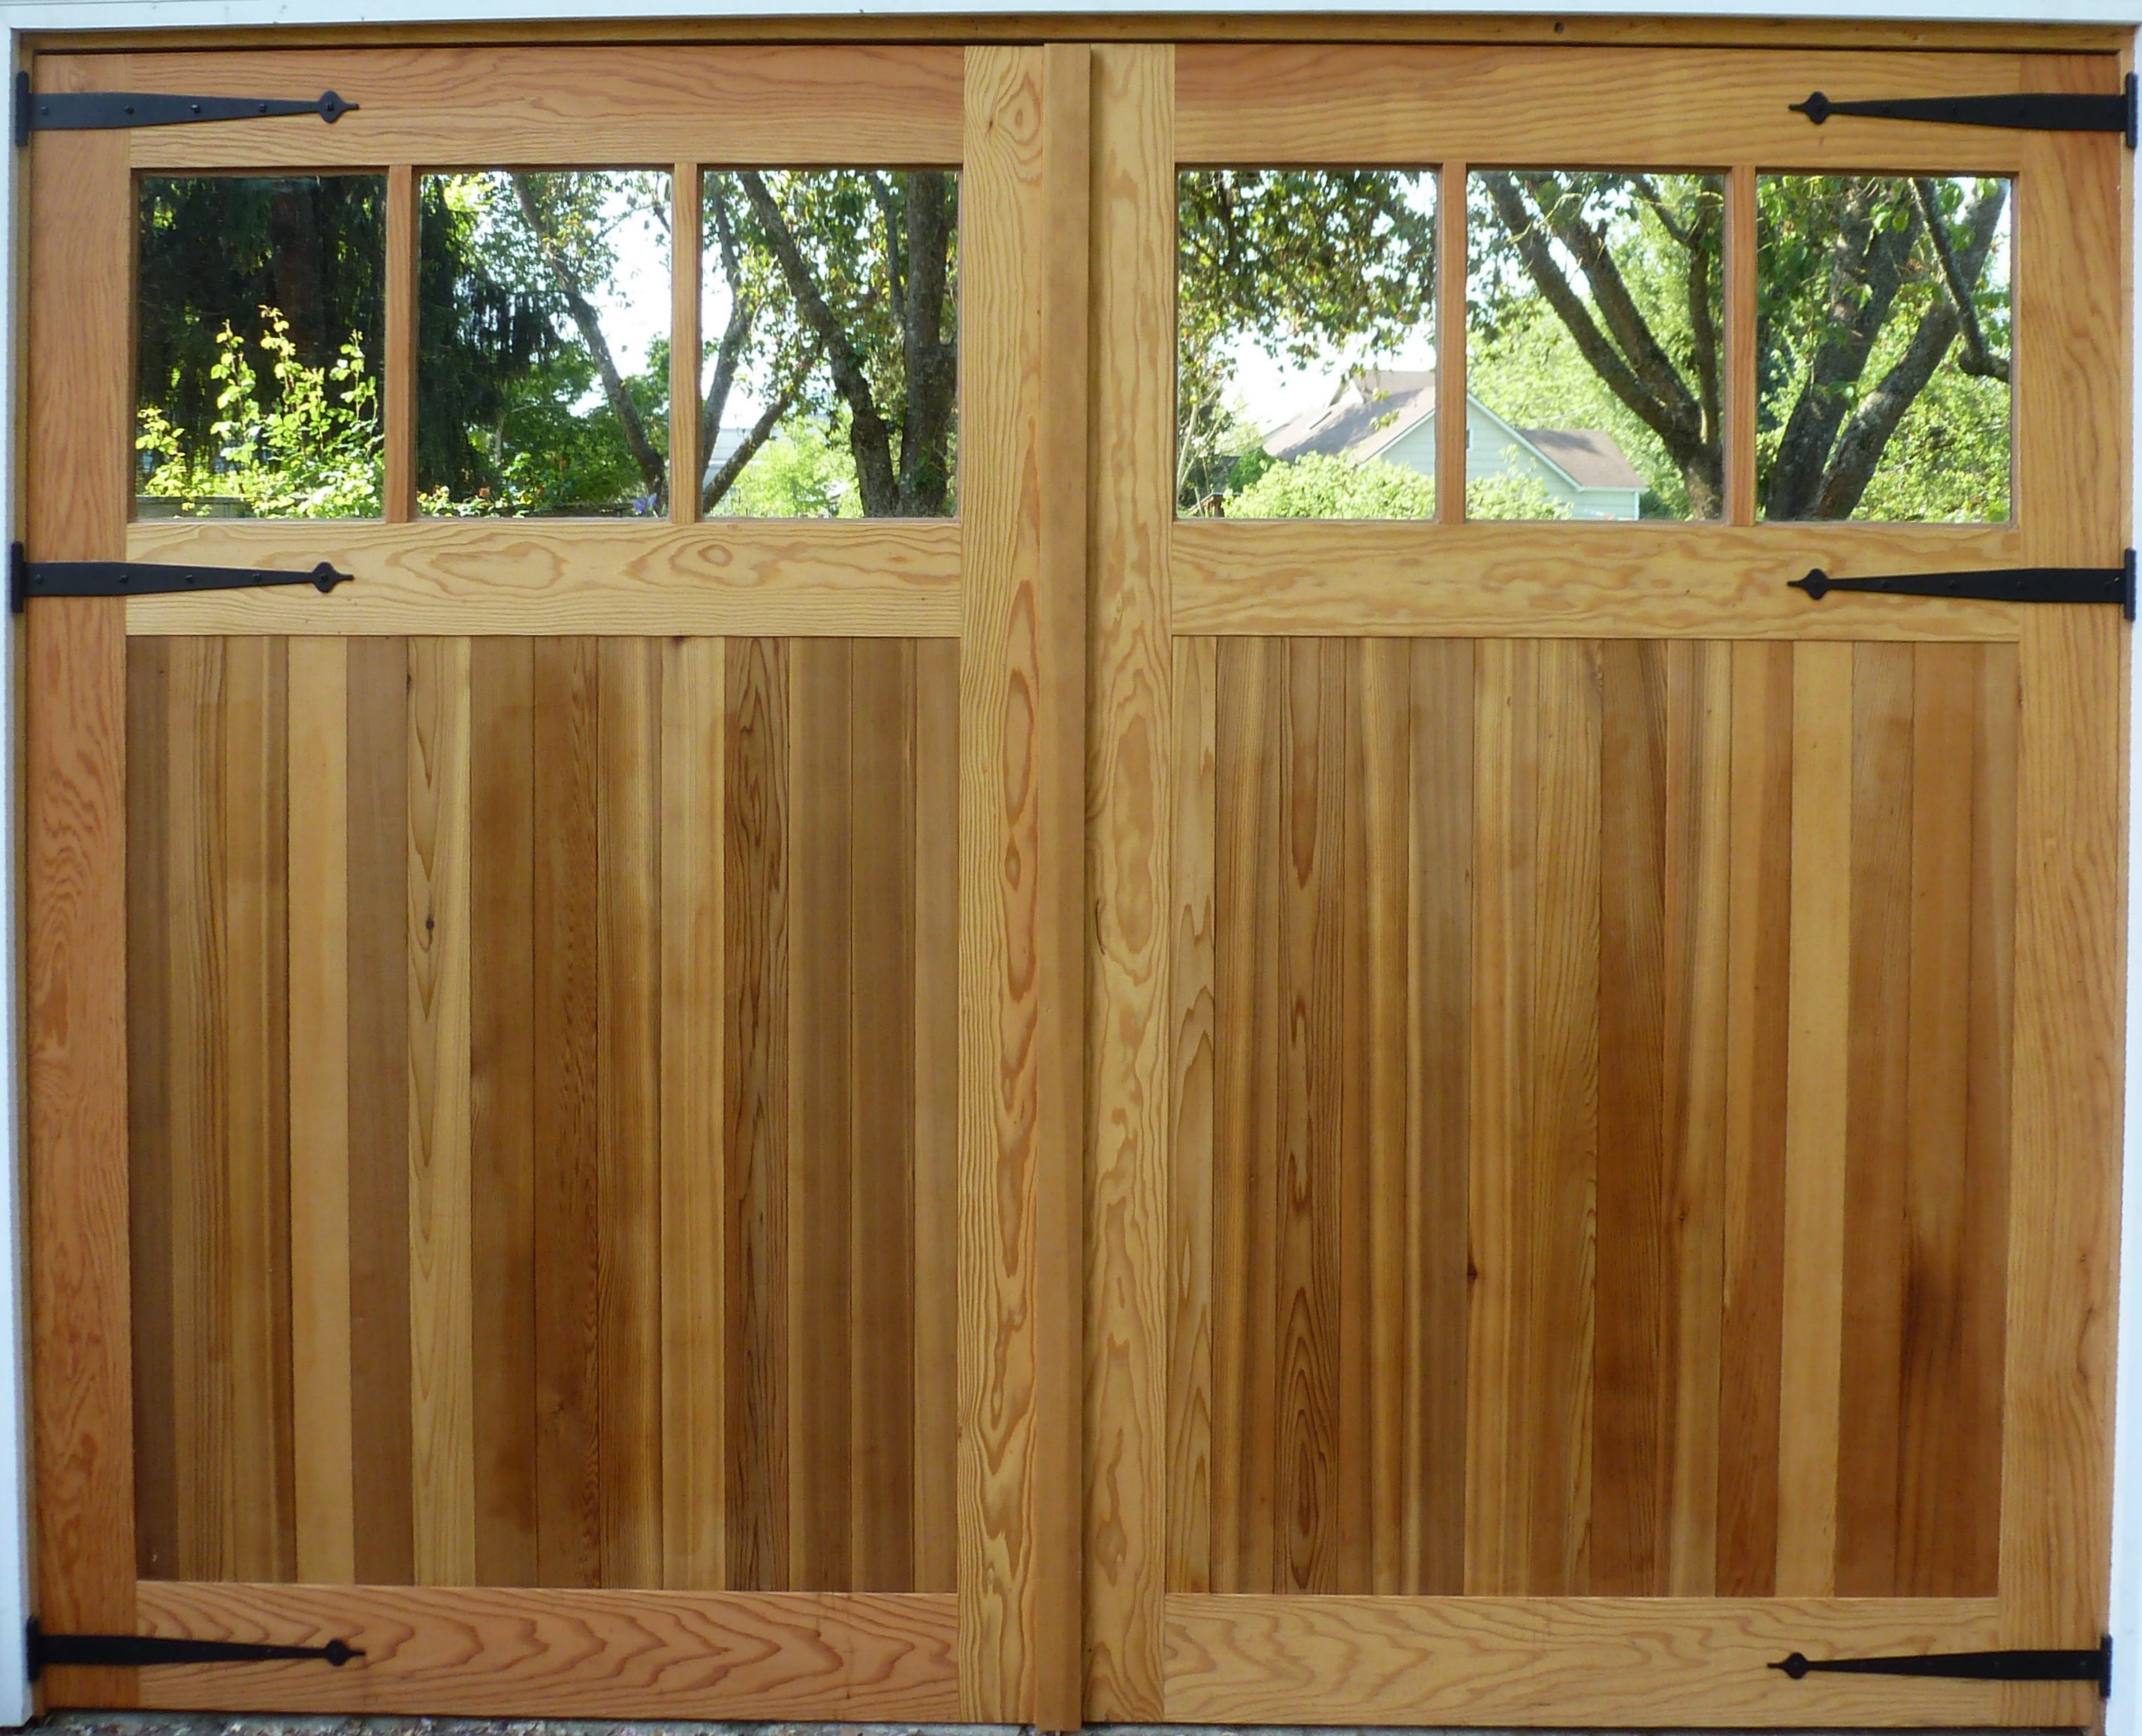 SingCore Testimonials  Non-warping patented wooden pivot door, sliding door,  and Eco-friendly metal cores